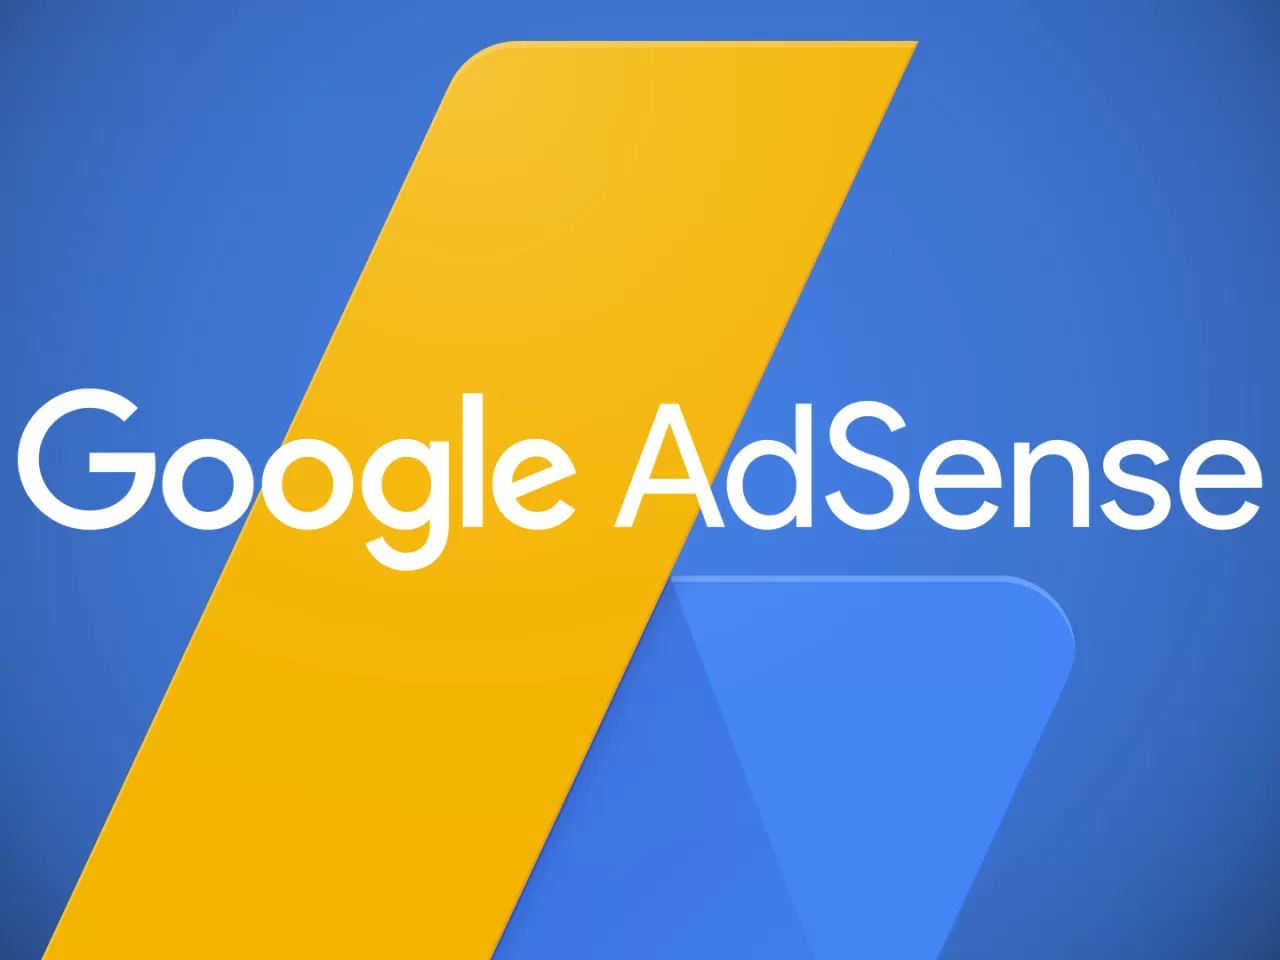 Google Adsense Nedir? Youtube Kanalı Google Adsense’e Nasıl Bağlanır?